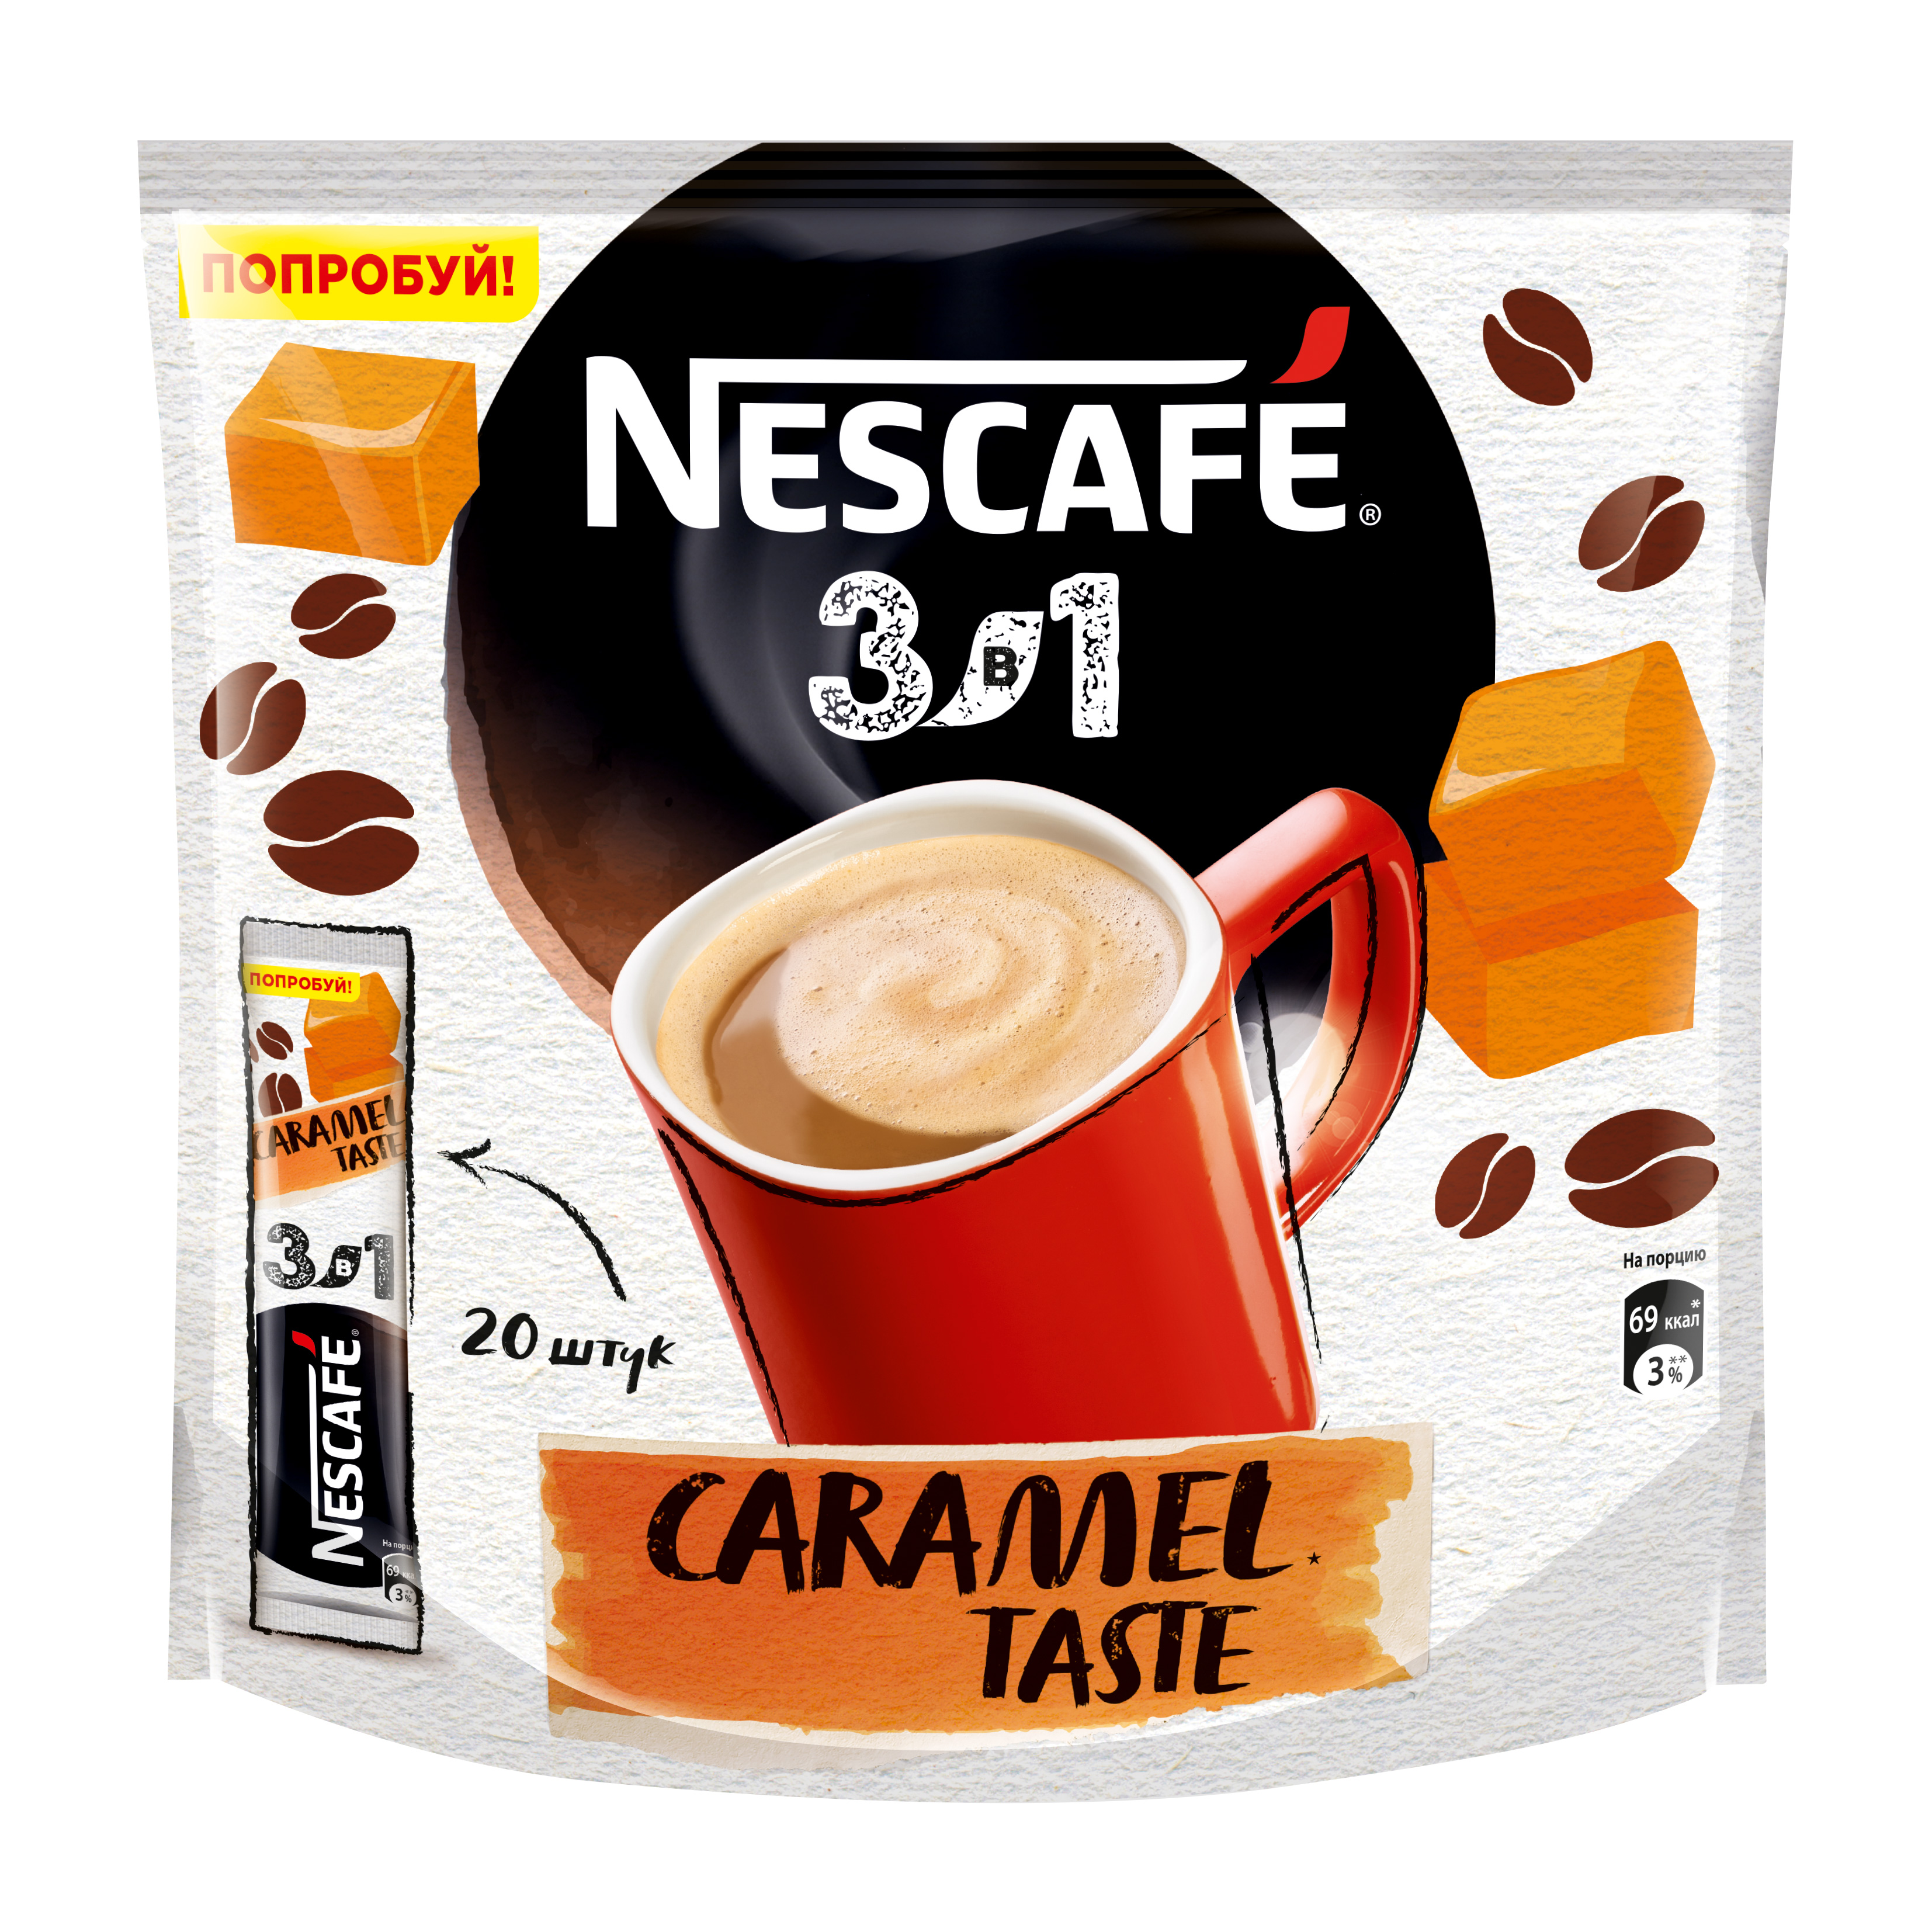 Кофе нескафе спб. Кофе Нескафе 3 в 1 карамель. Кофе Нескафе в пакетиках 3 в 1. Nescafe 3в1 карамель. Кофе Nescafe 3 в 1 растворимый карамель.